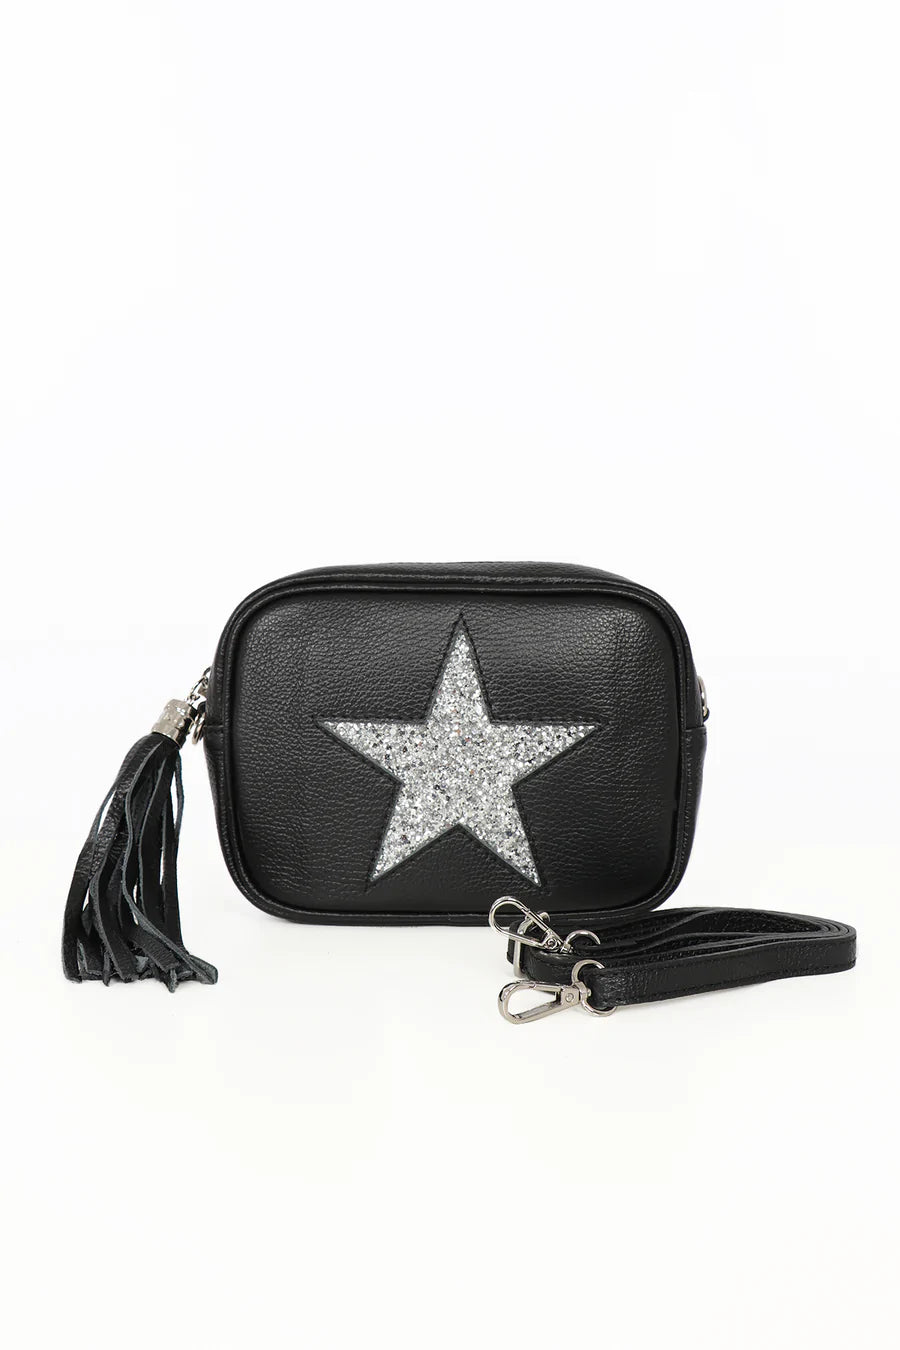 Cross Body Leather Bag Black Glitter Star